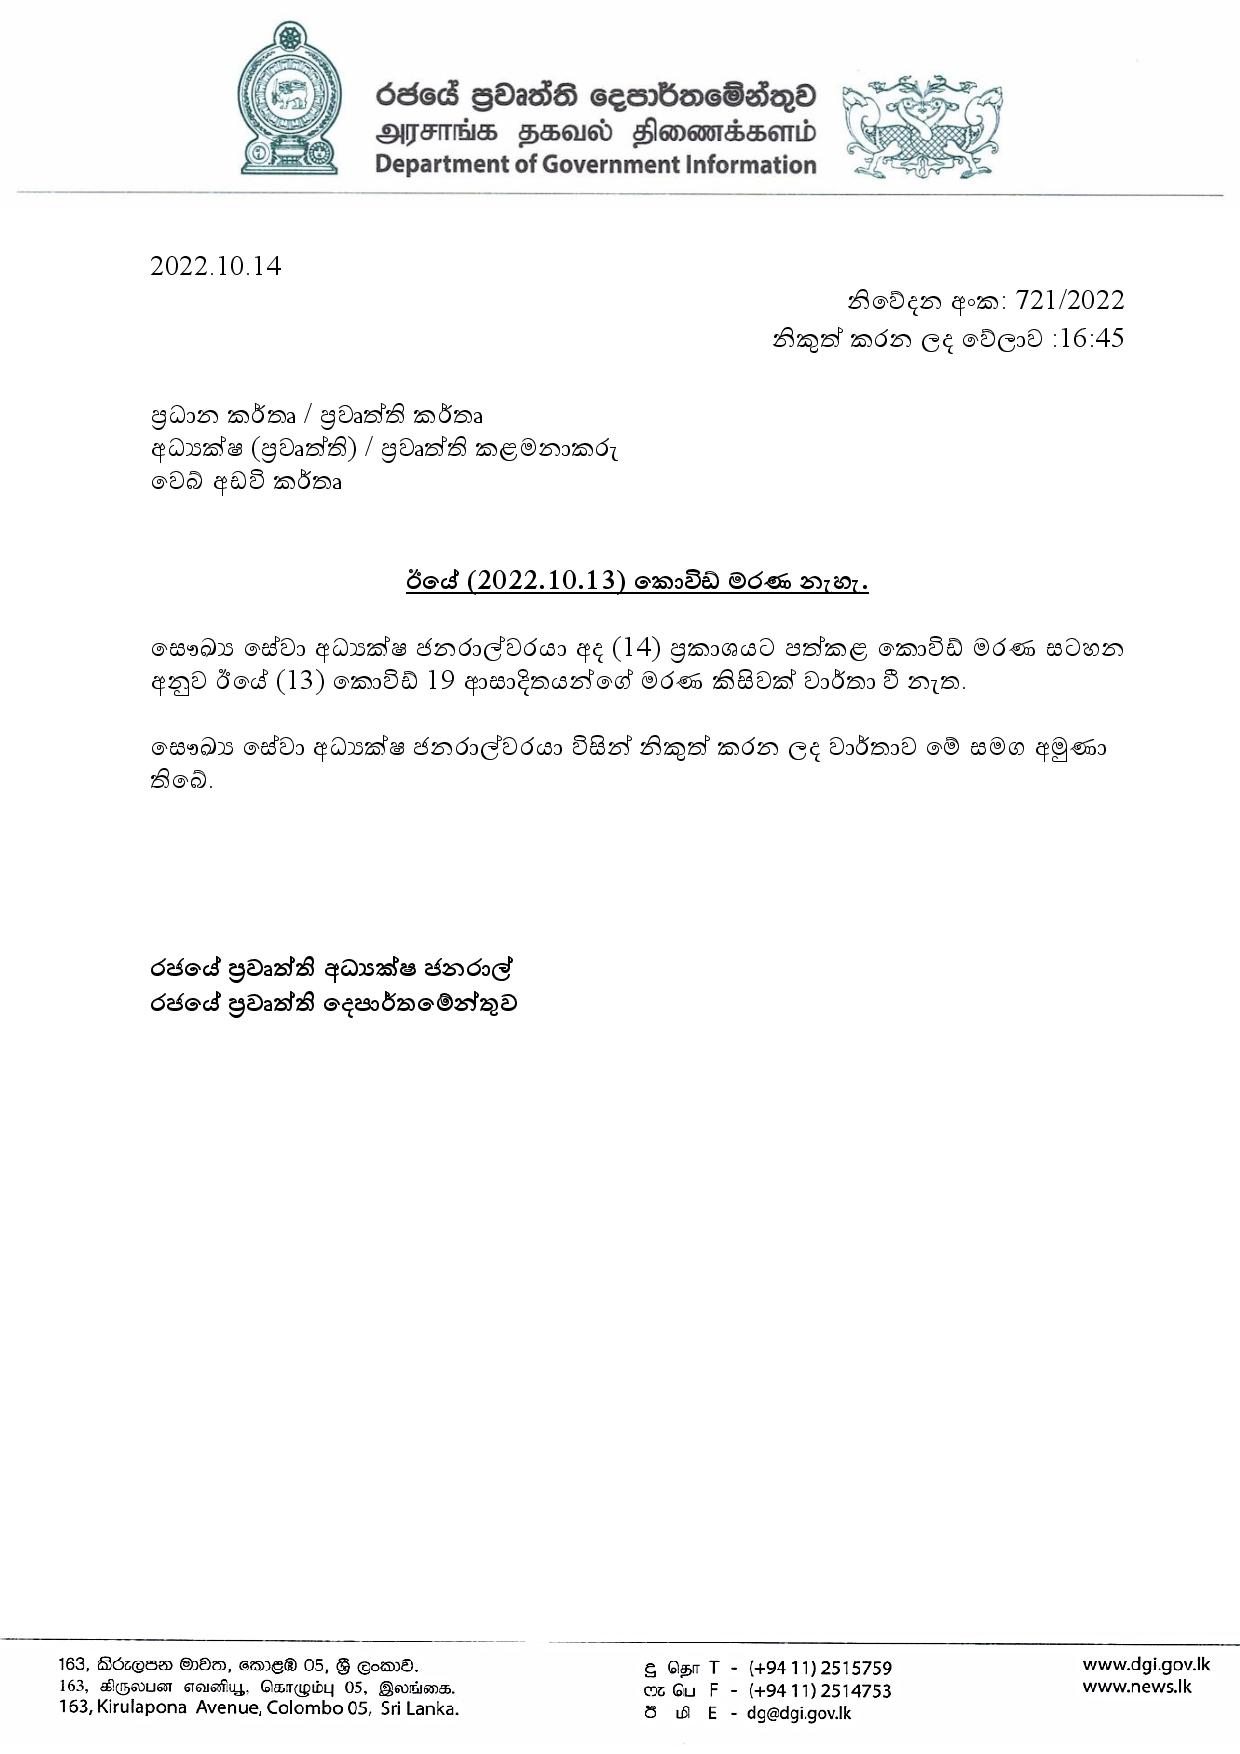 Press Release 721 Sinhala page 001